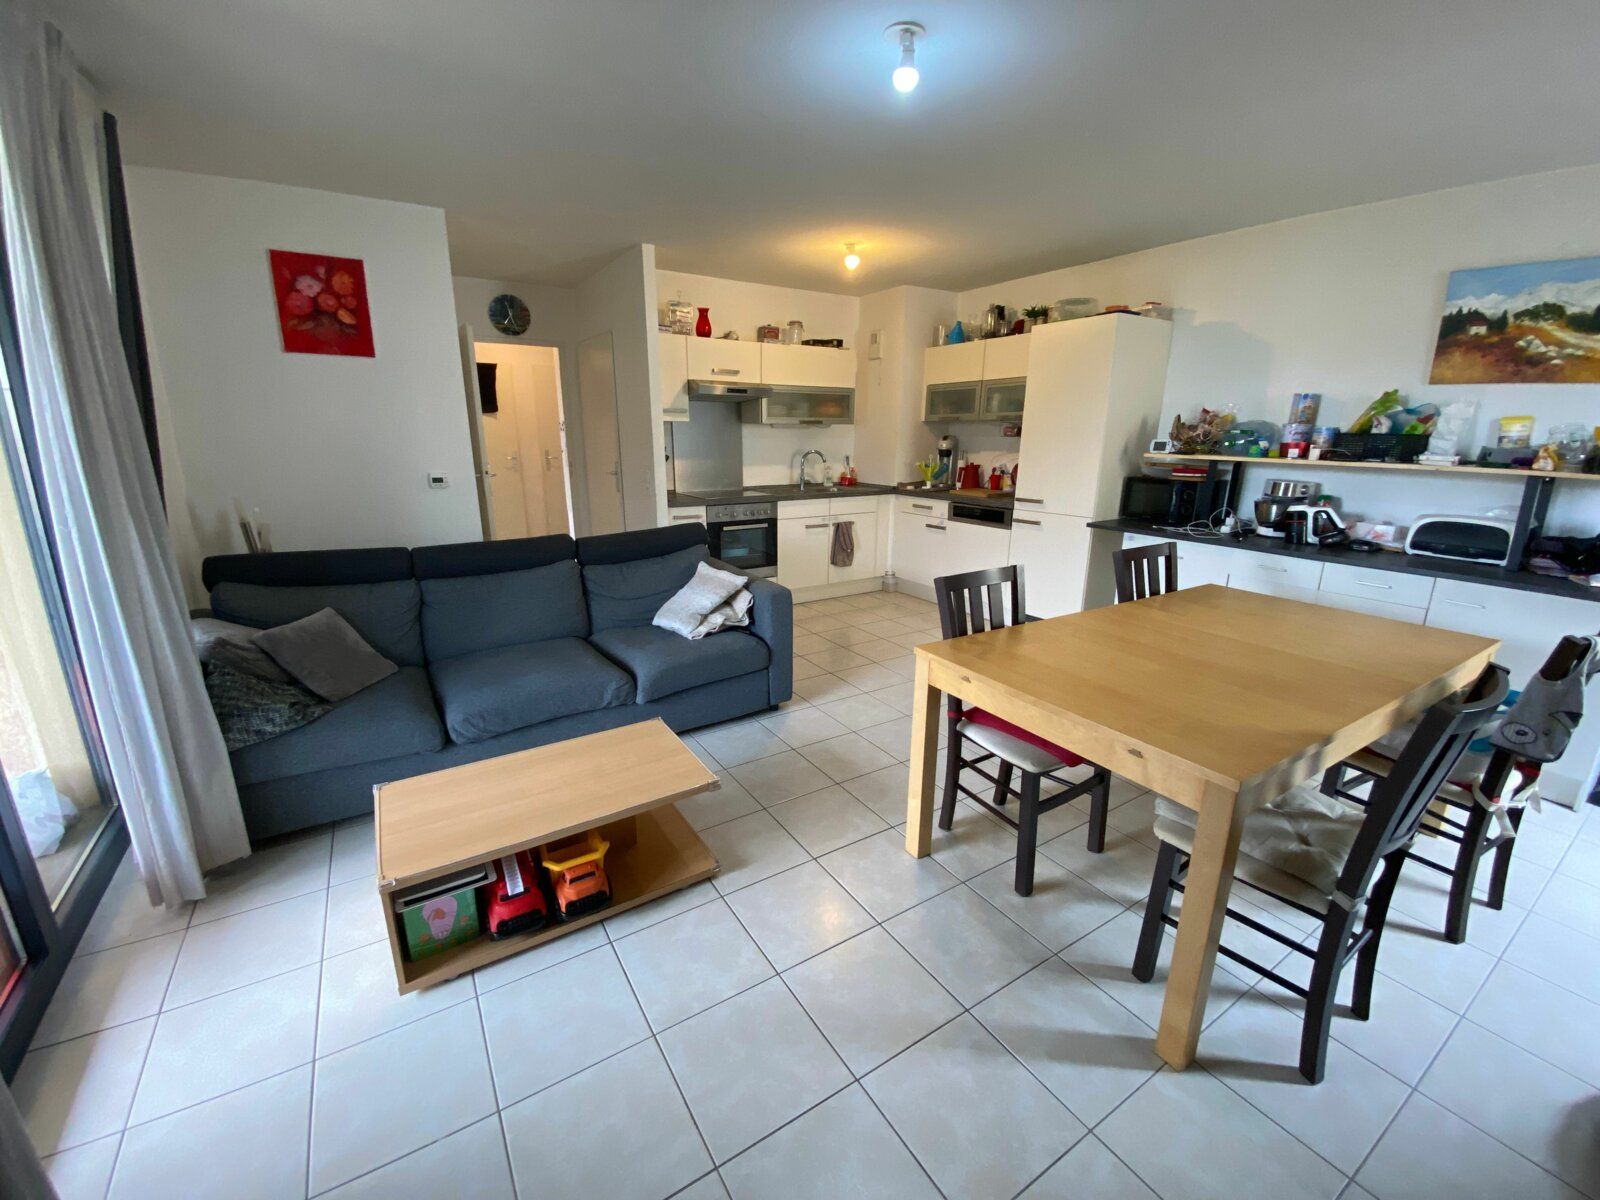 Appartement à vendre 3 65.87m2 à Lorry-lès-Metz vignette-2